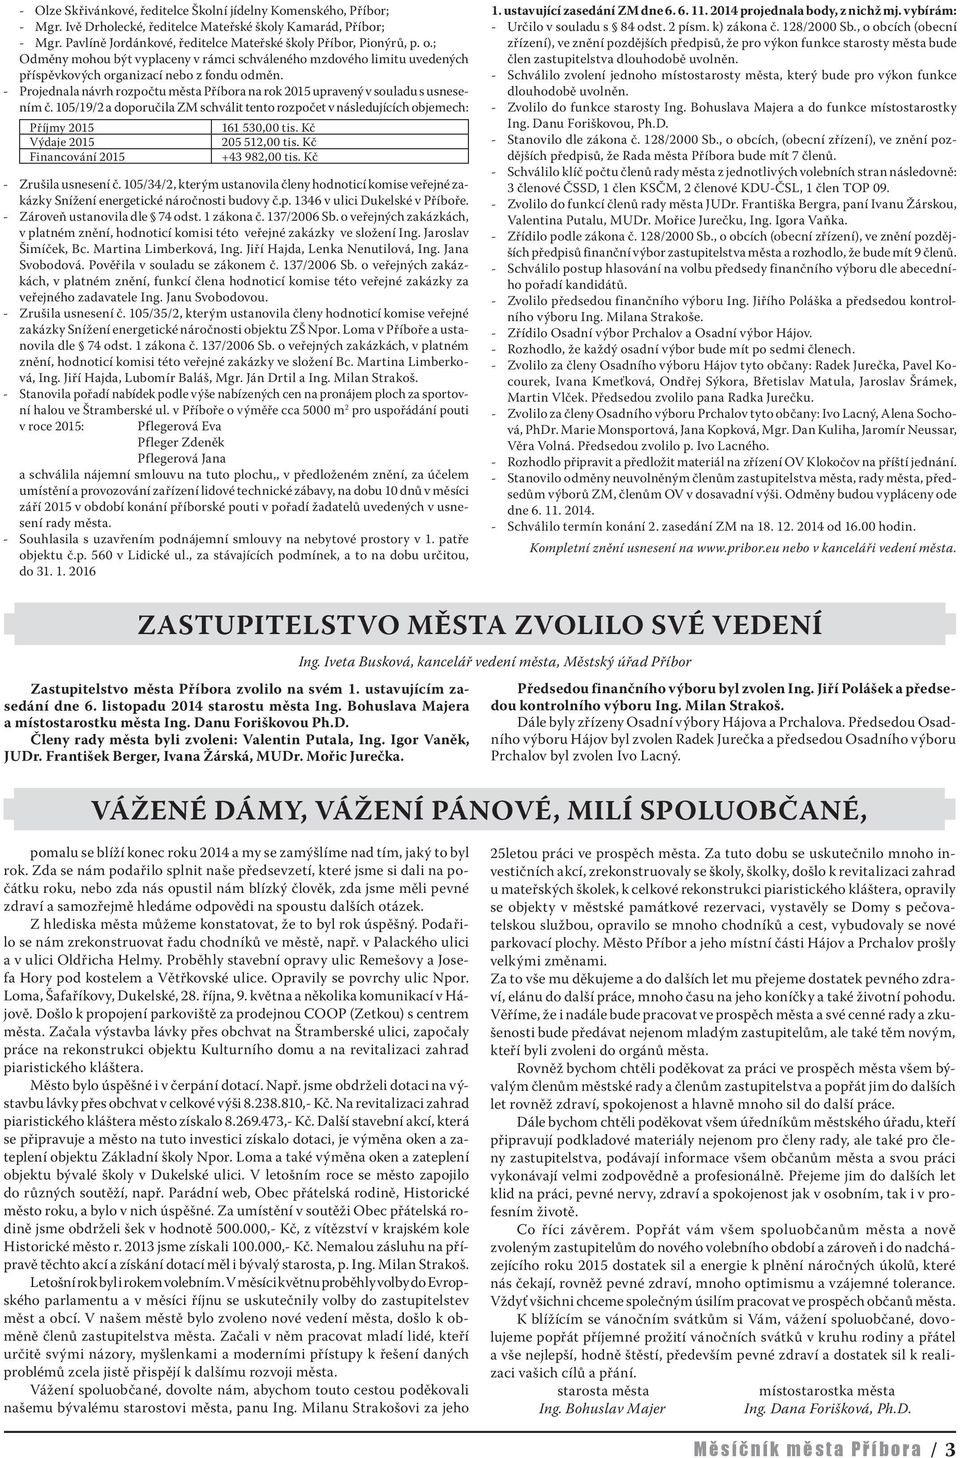 F F. Obsah VÁNOCE! SVÁTKY ZE VŠECH NEJKRÁSNĚJŠÍ - SVÁTKY RODINNÉ. - PDF  Stažení zdarma